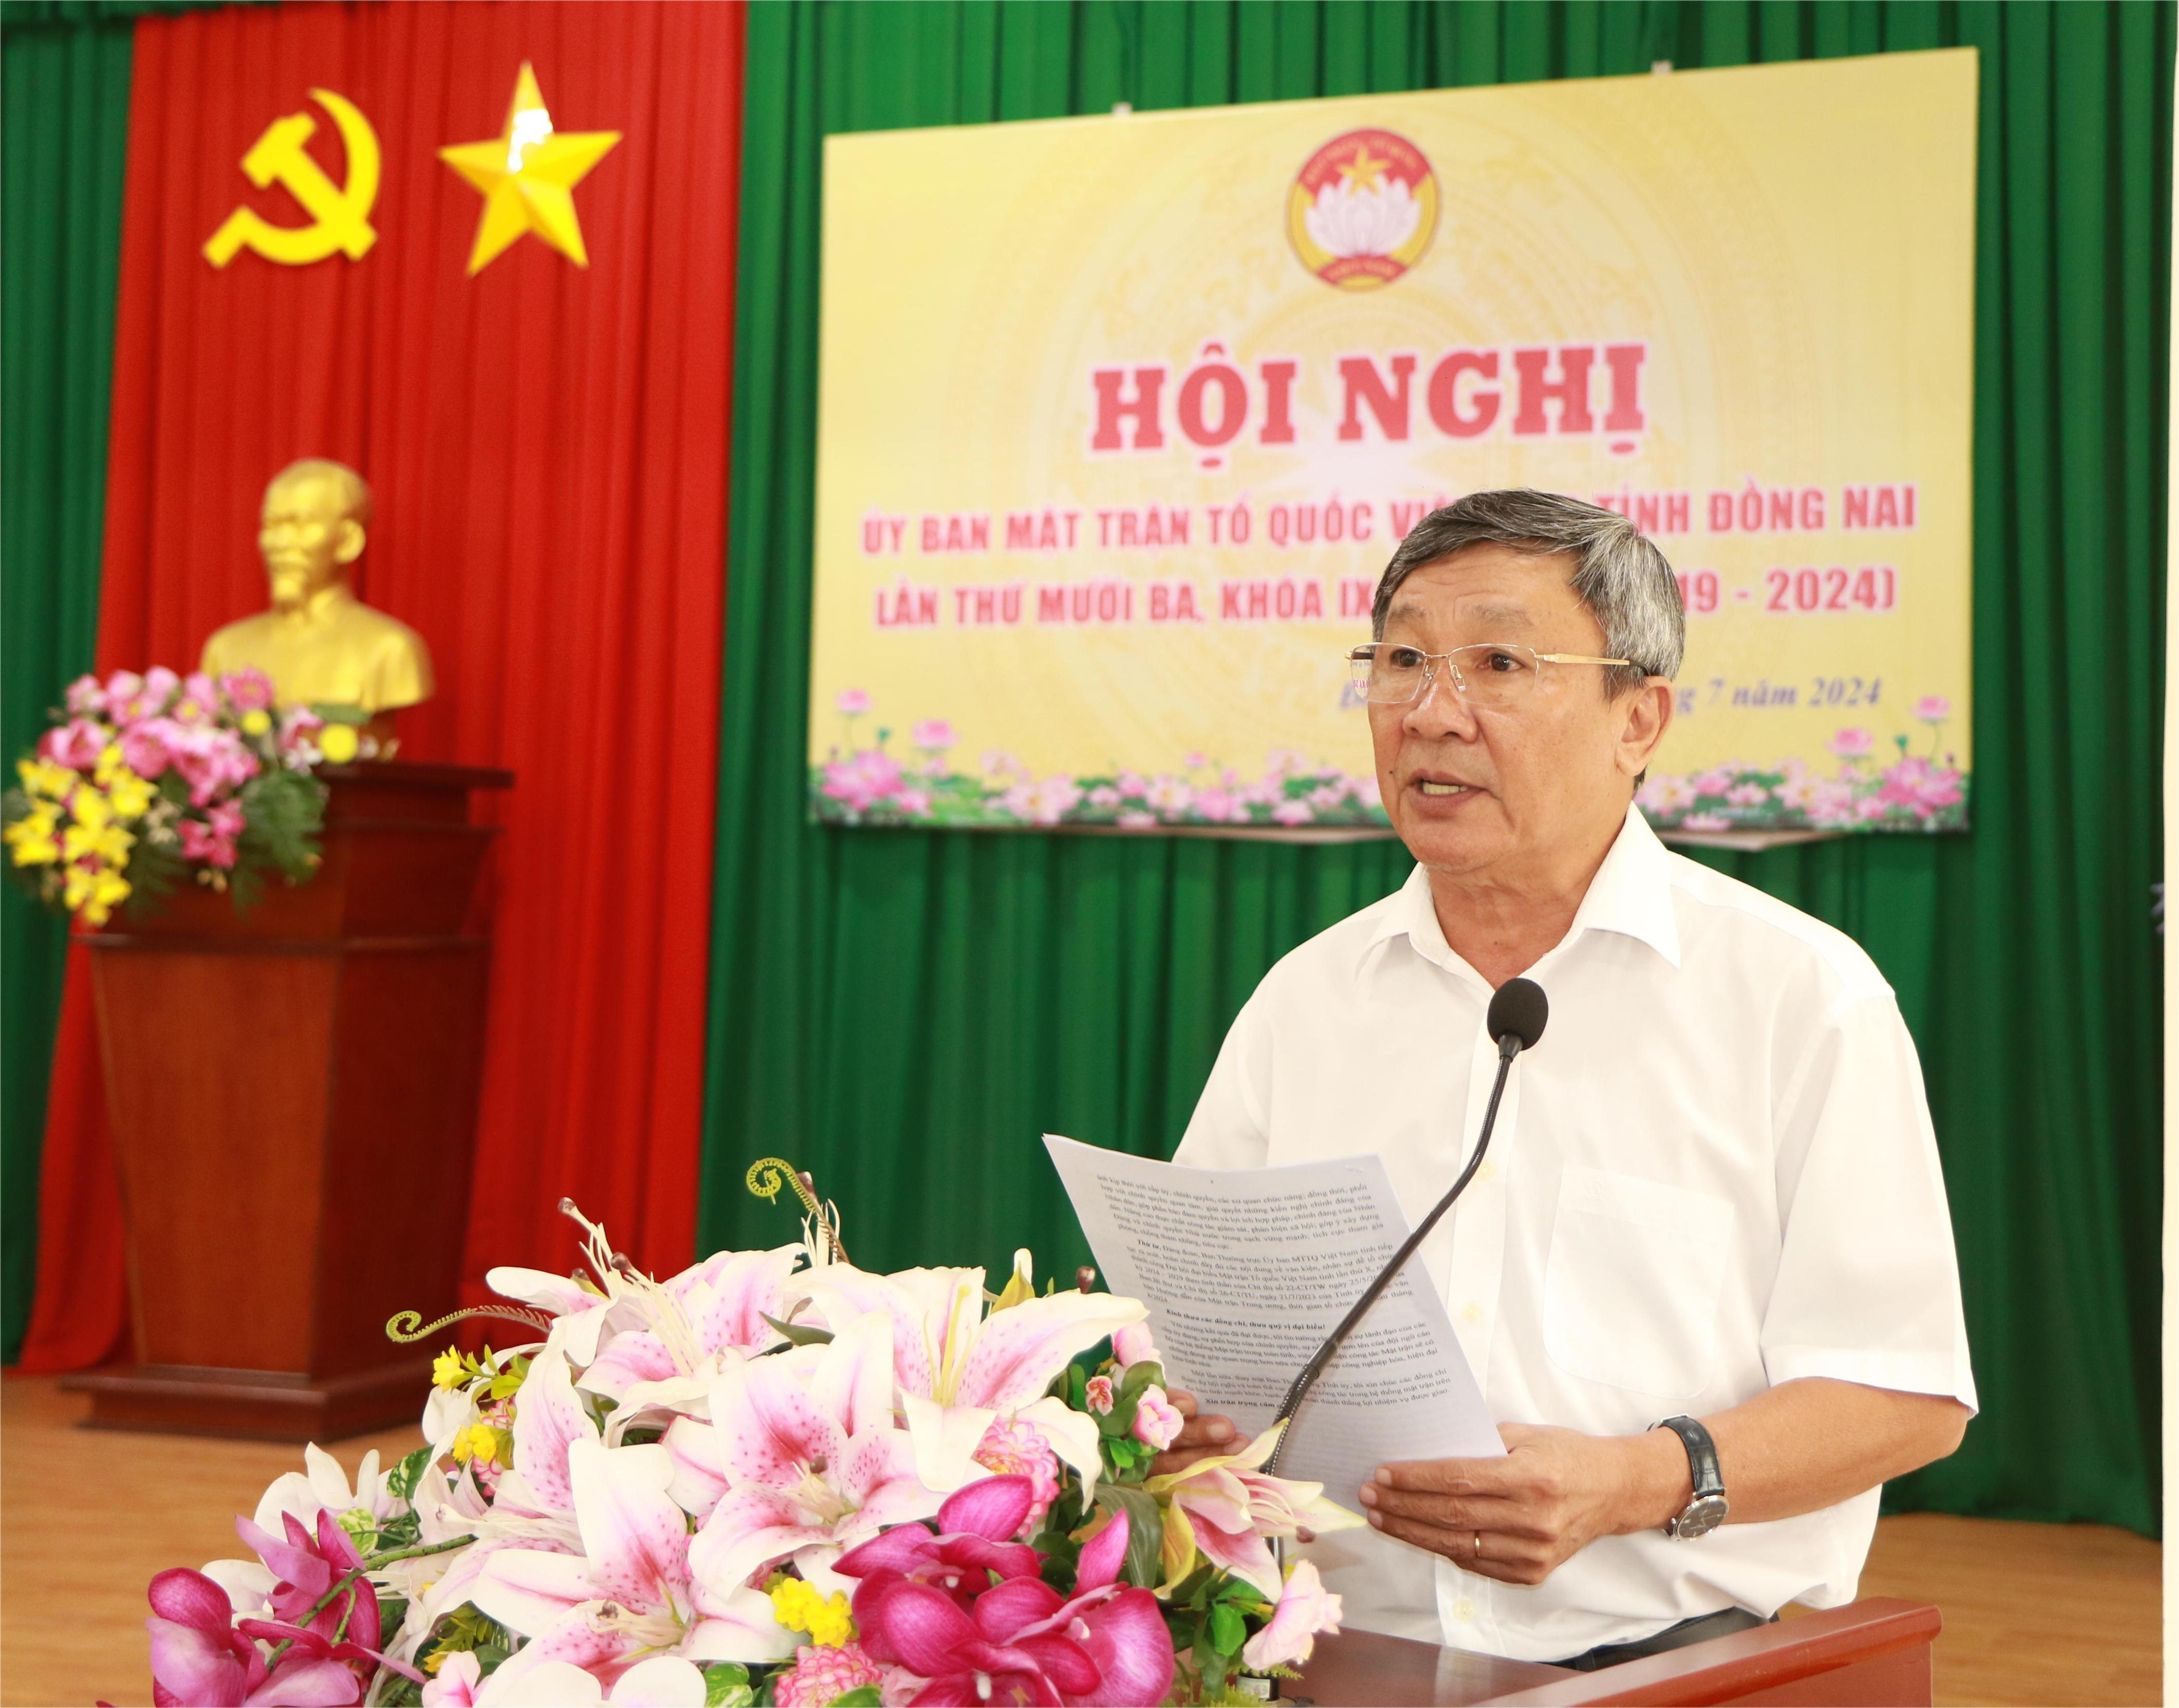 Phó bí thư thường trực Tỉnh ủy Hồ Thanh Sơn phát biểu tại hội nghị. Ảnh: Sông Thao

